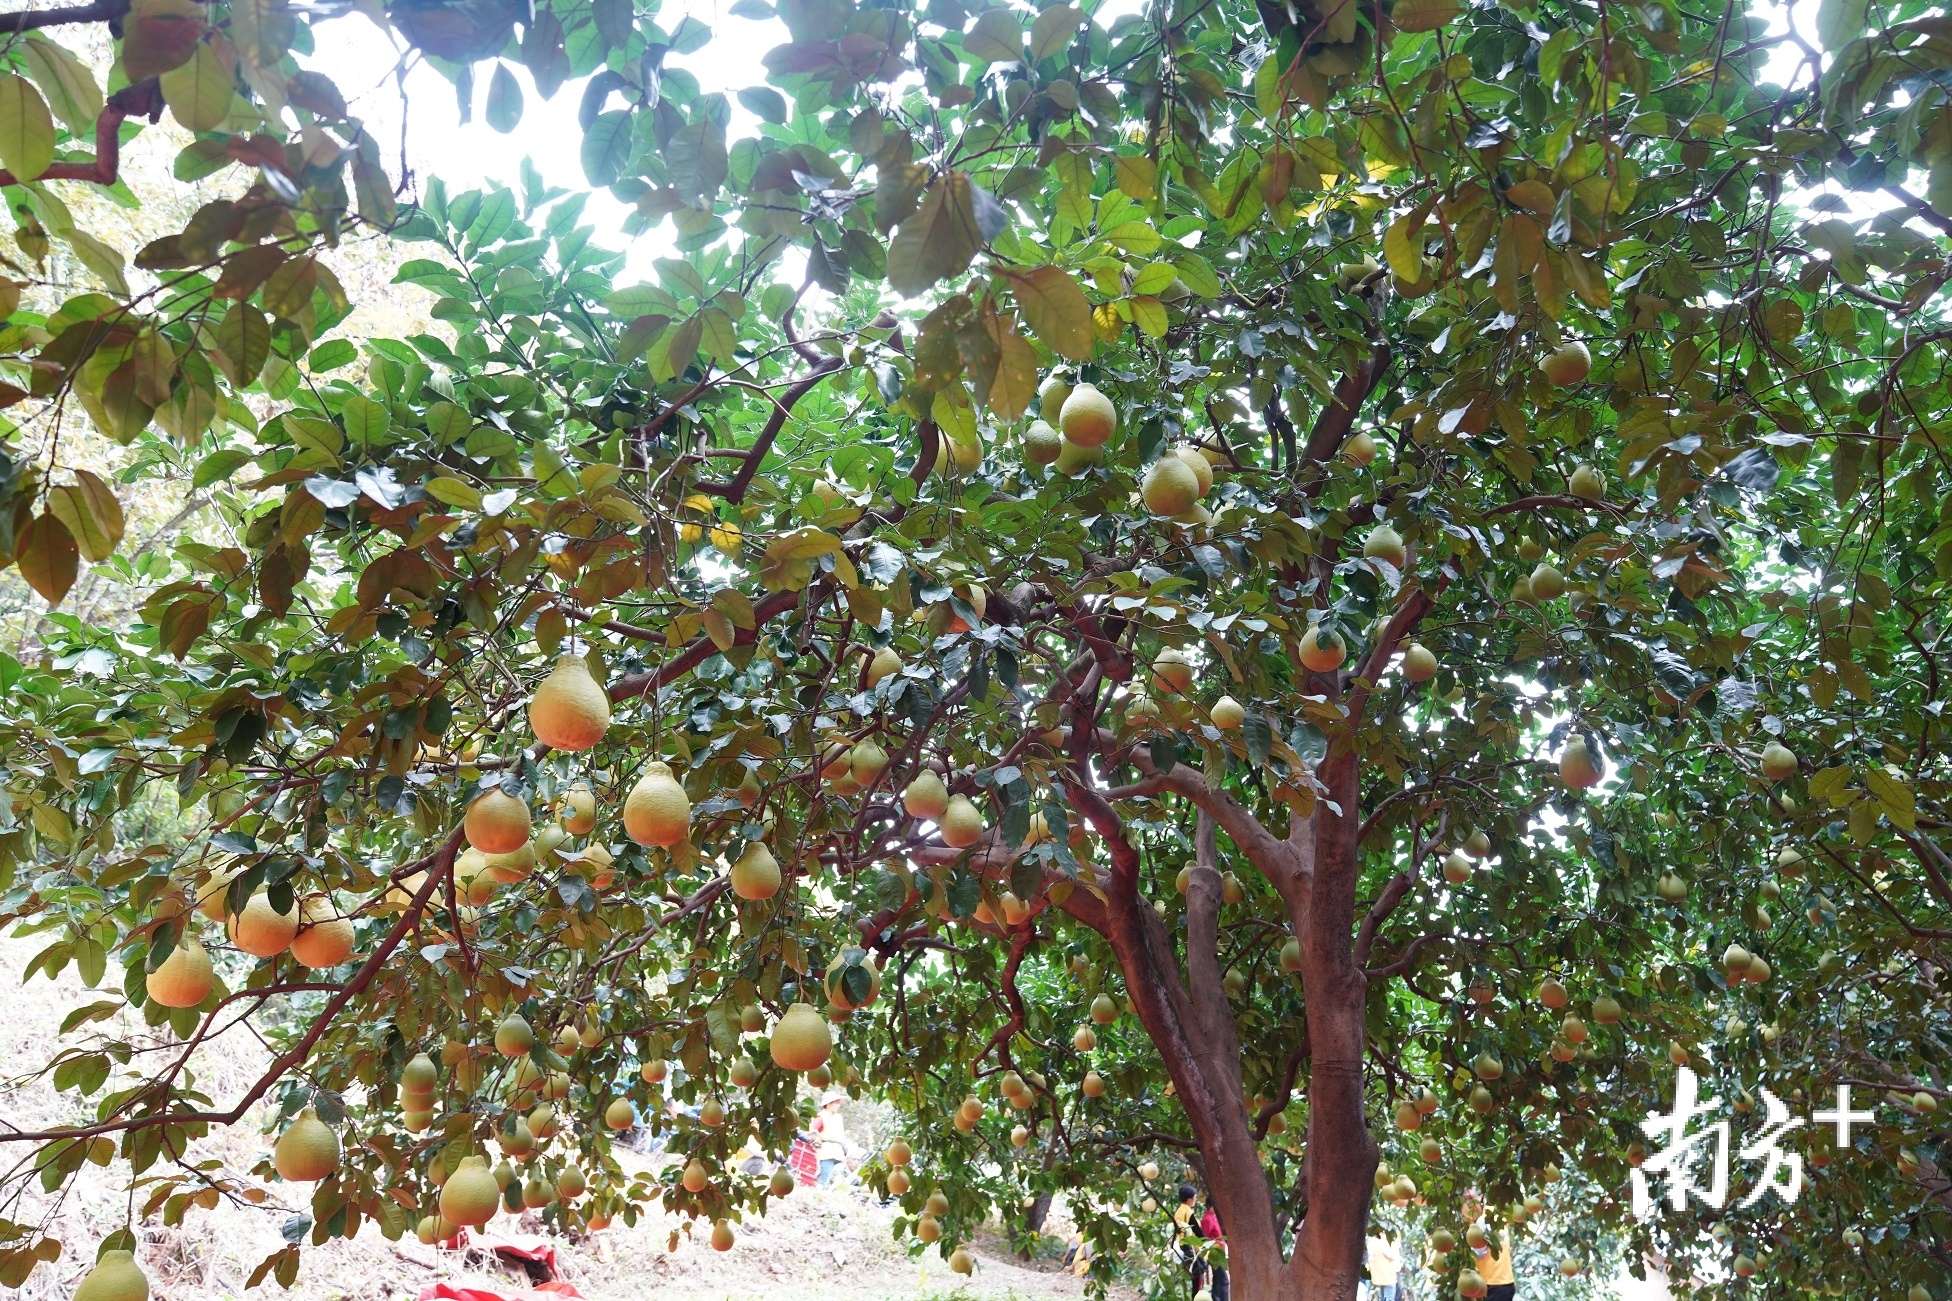 沙巴柚农不停催花修枝 长年生产质佳红柚&白柚 - 农牧世界